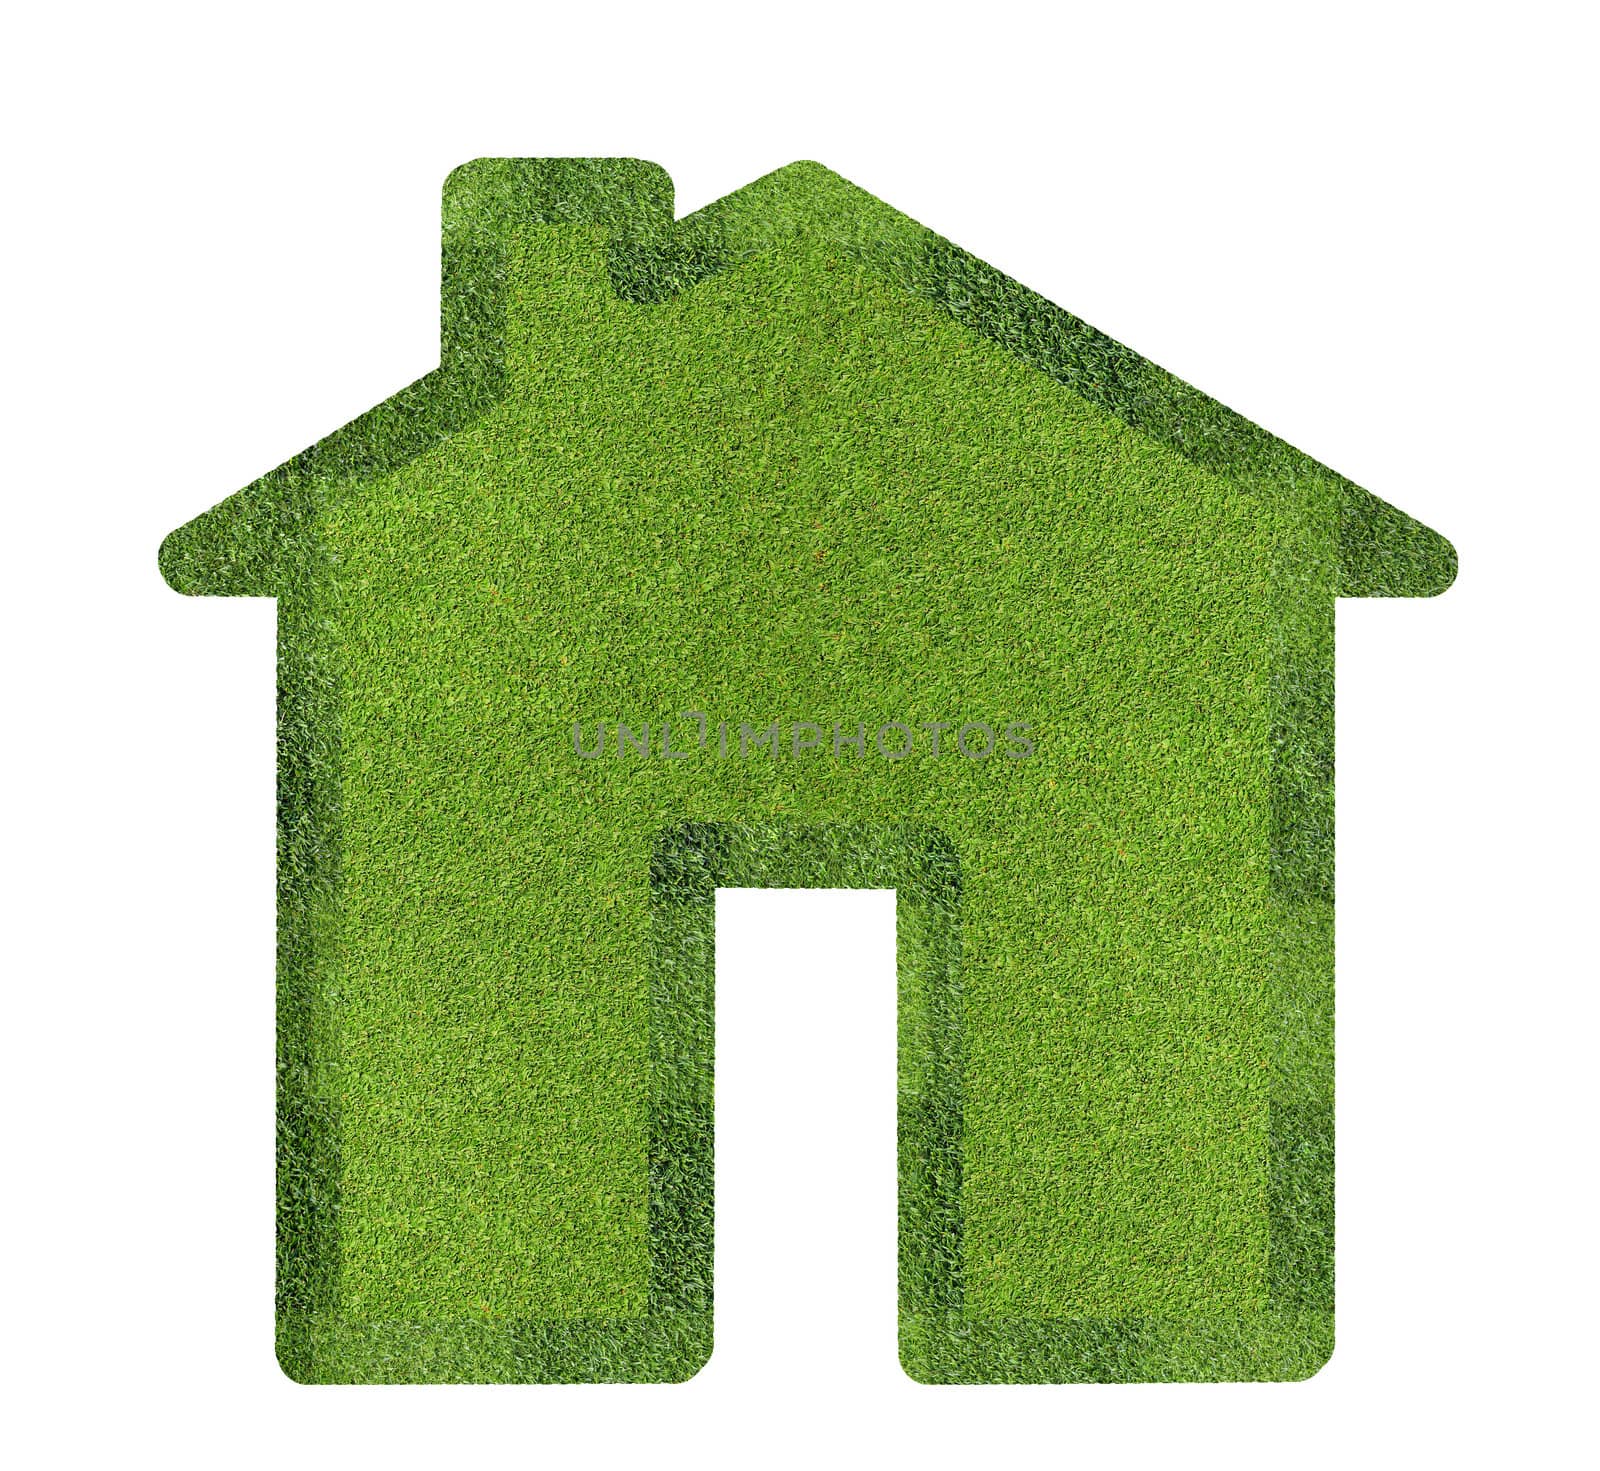 Floor grass